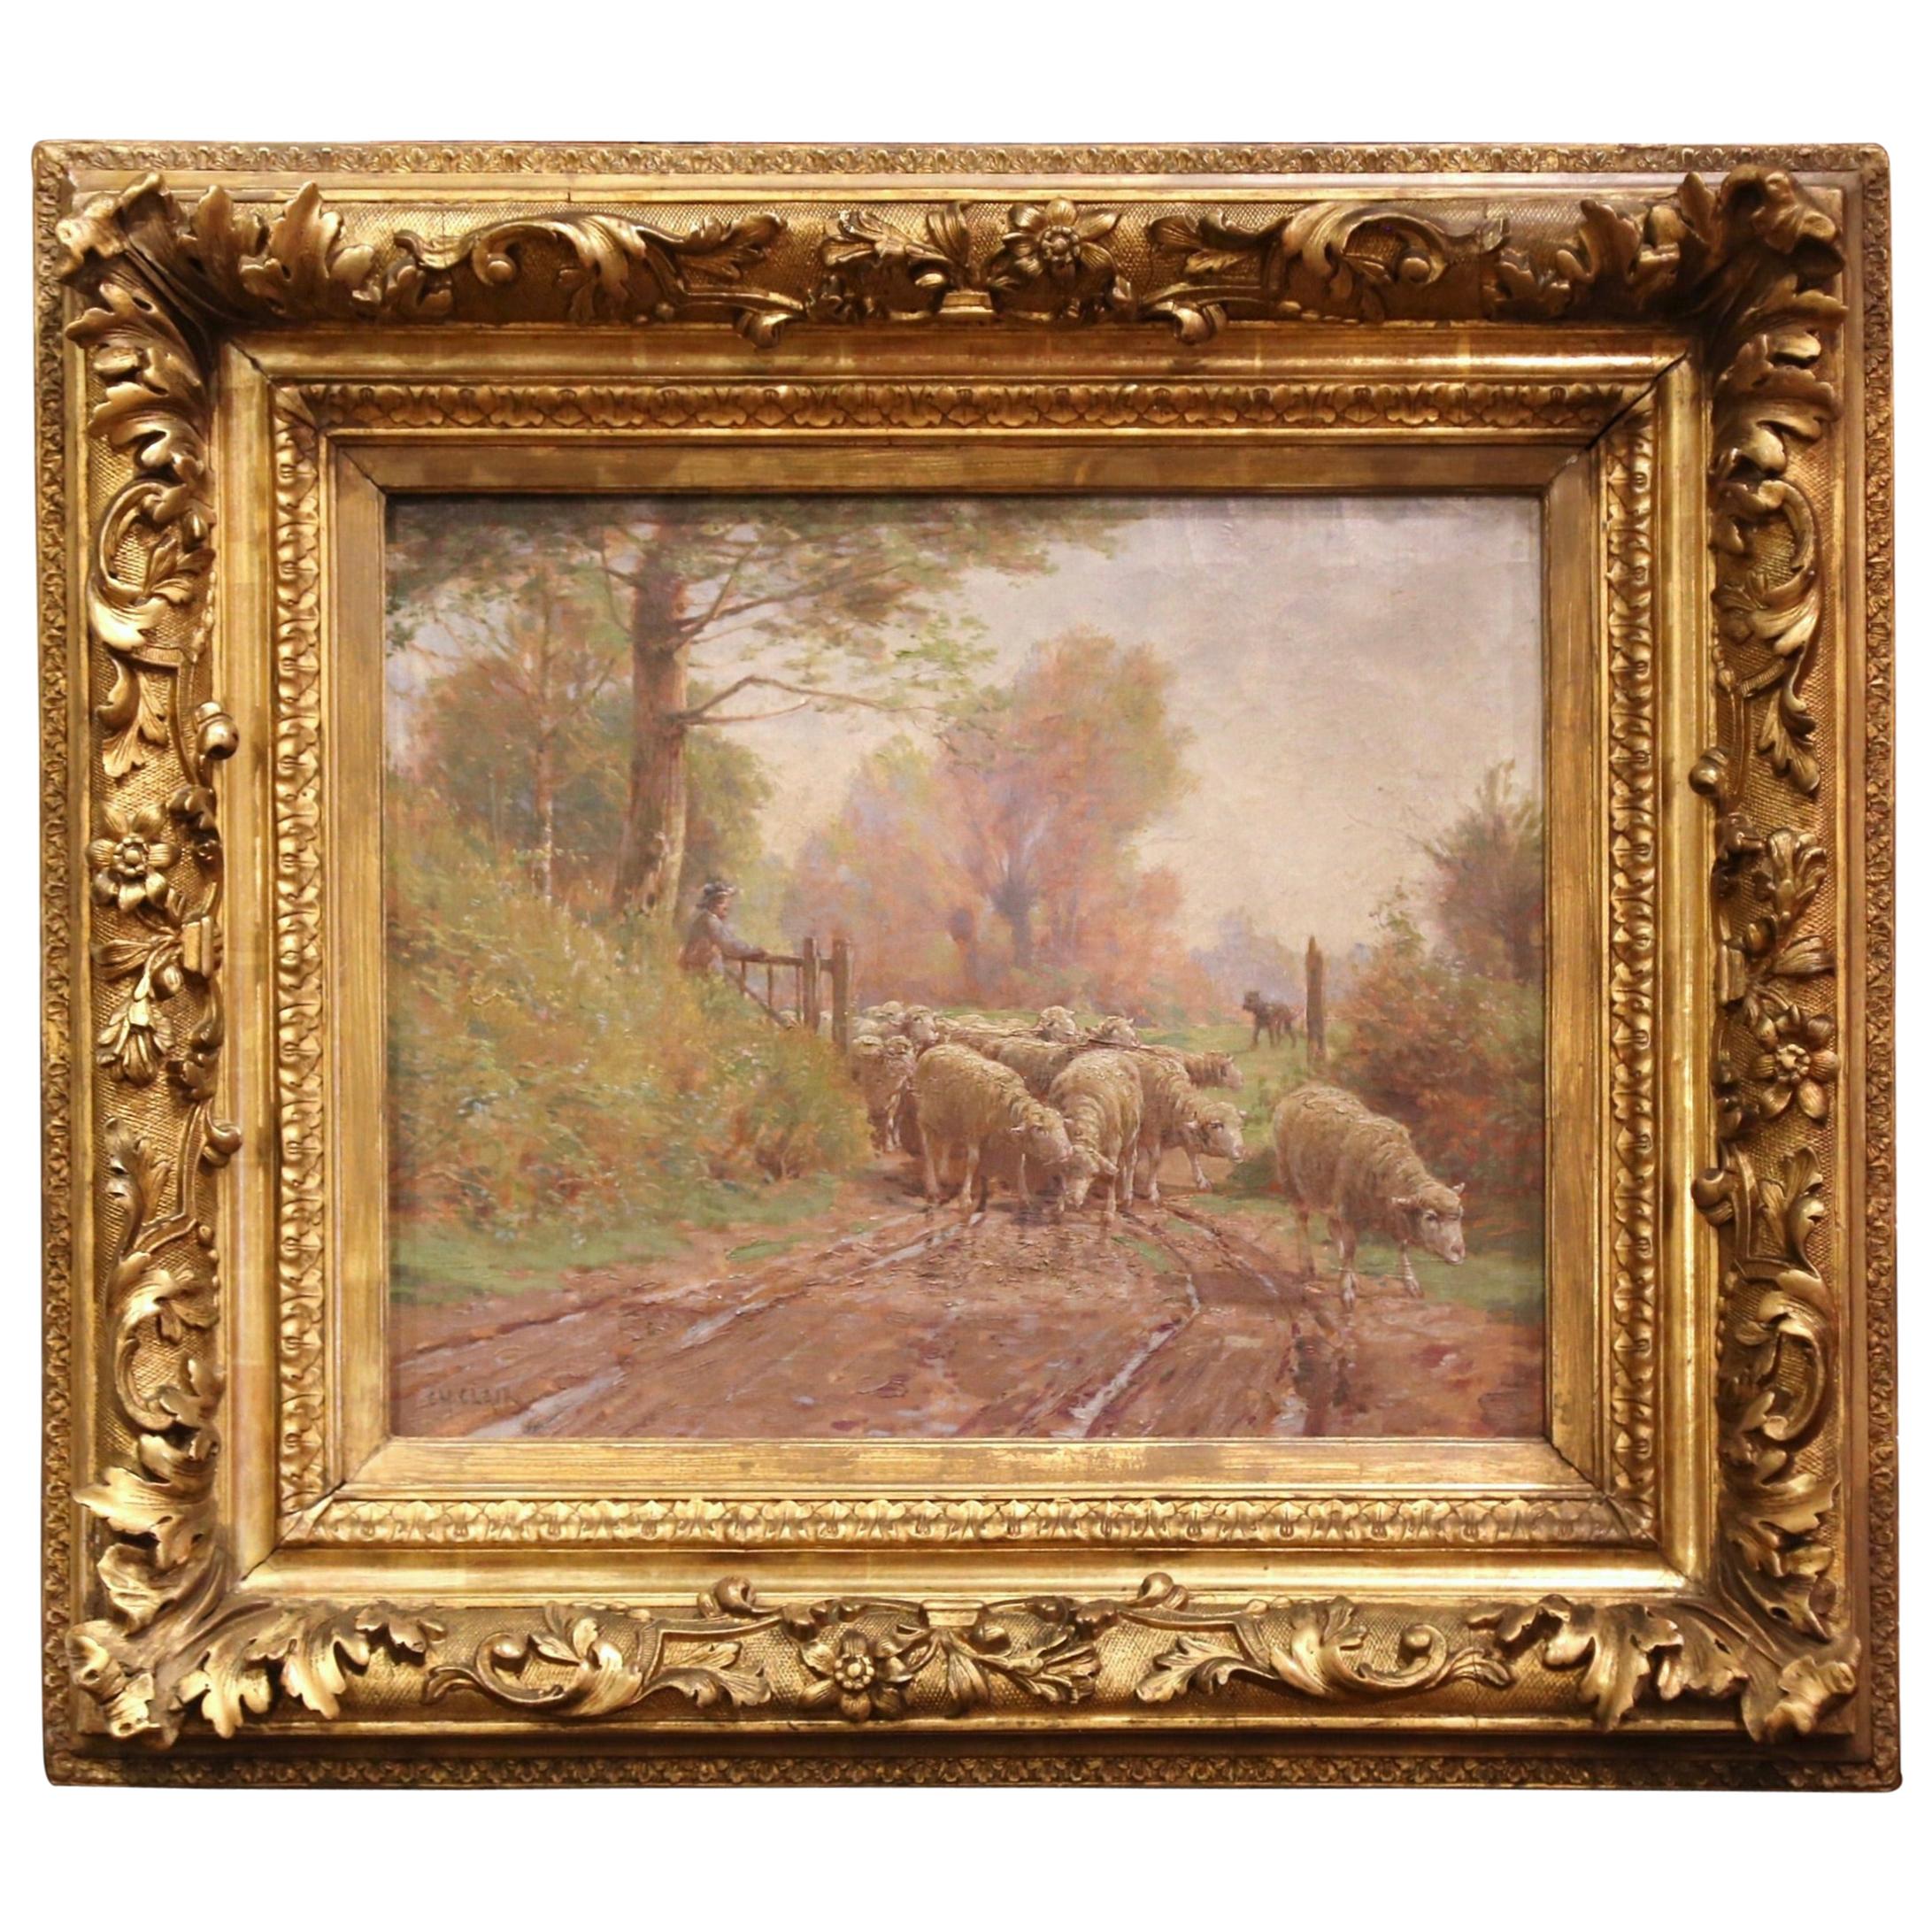 Peinture française du 19ème siècle représentant des moutons, cadre sculpté et doré, signé Charles Clair